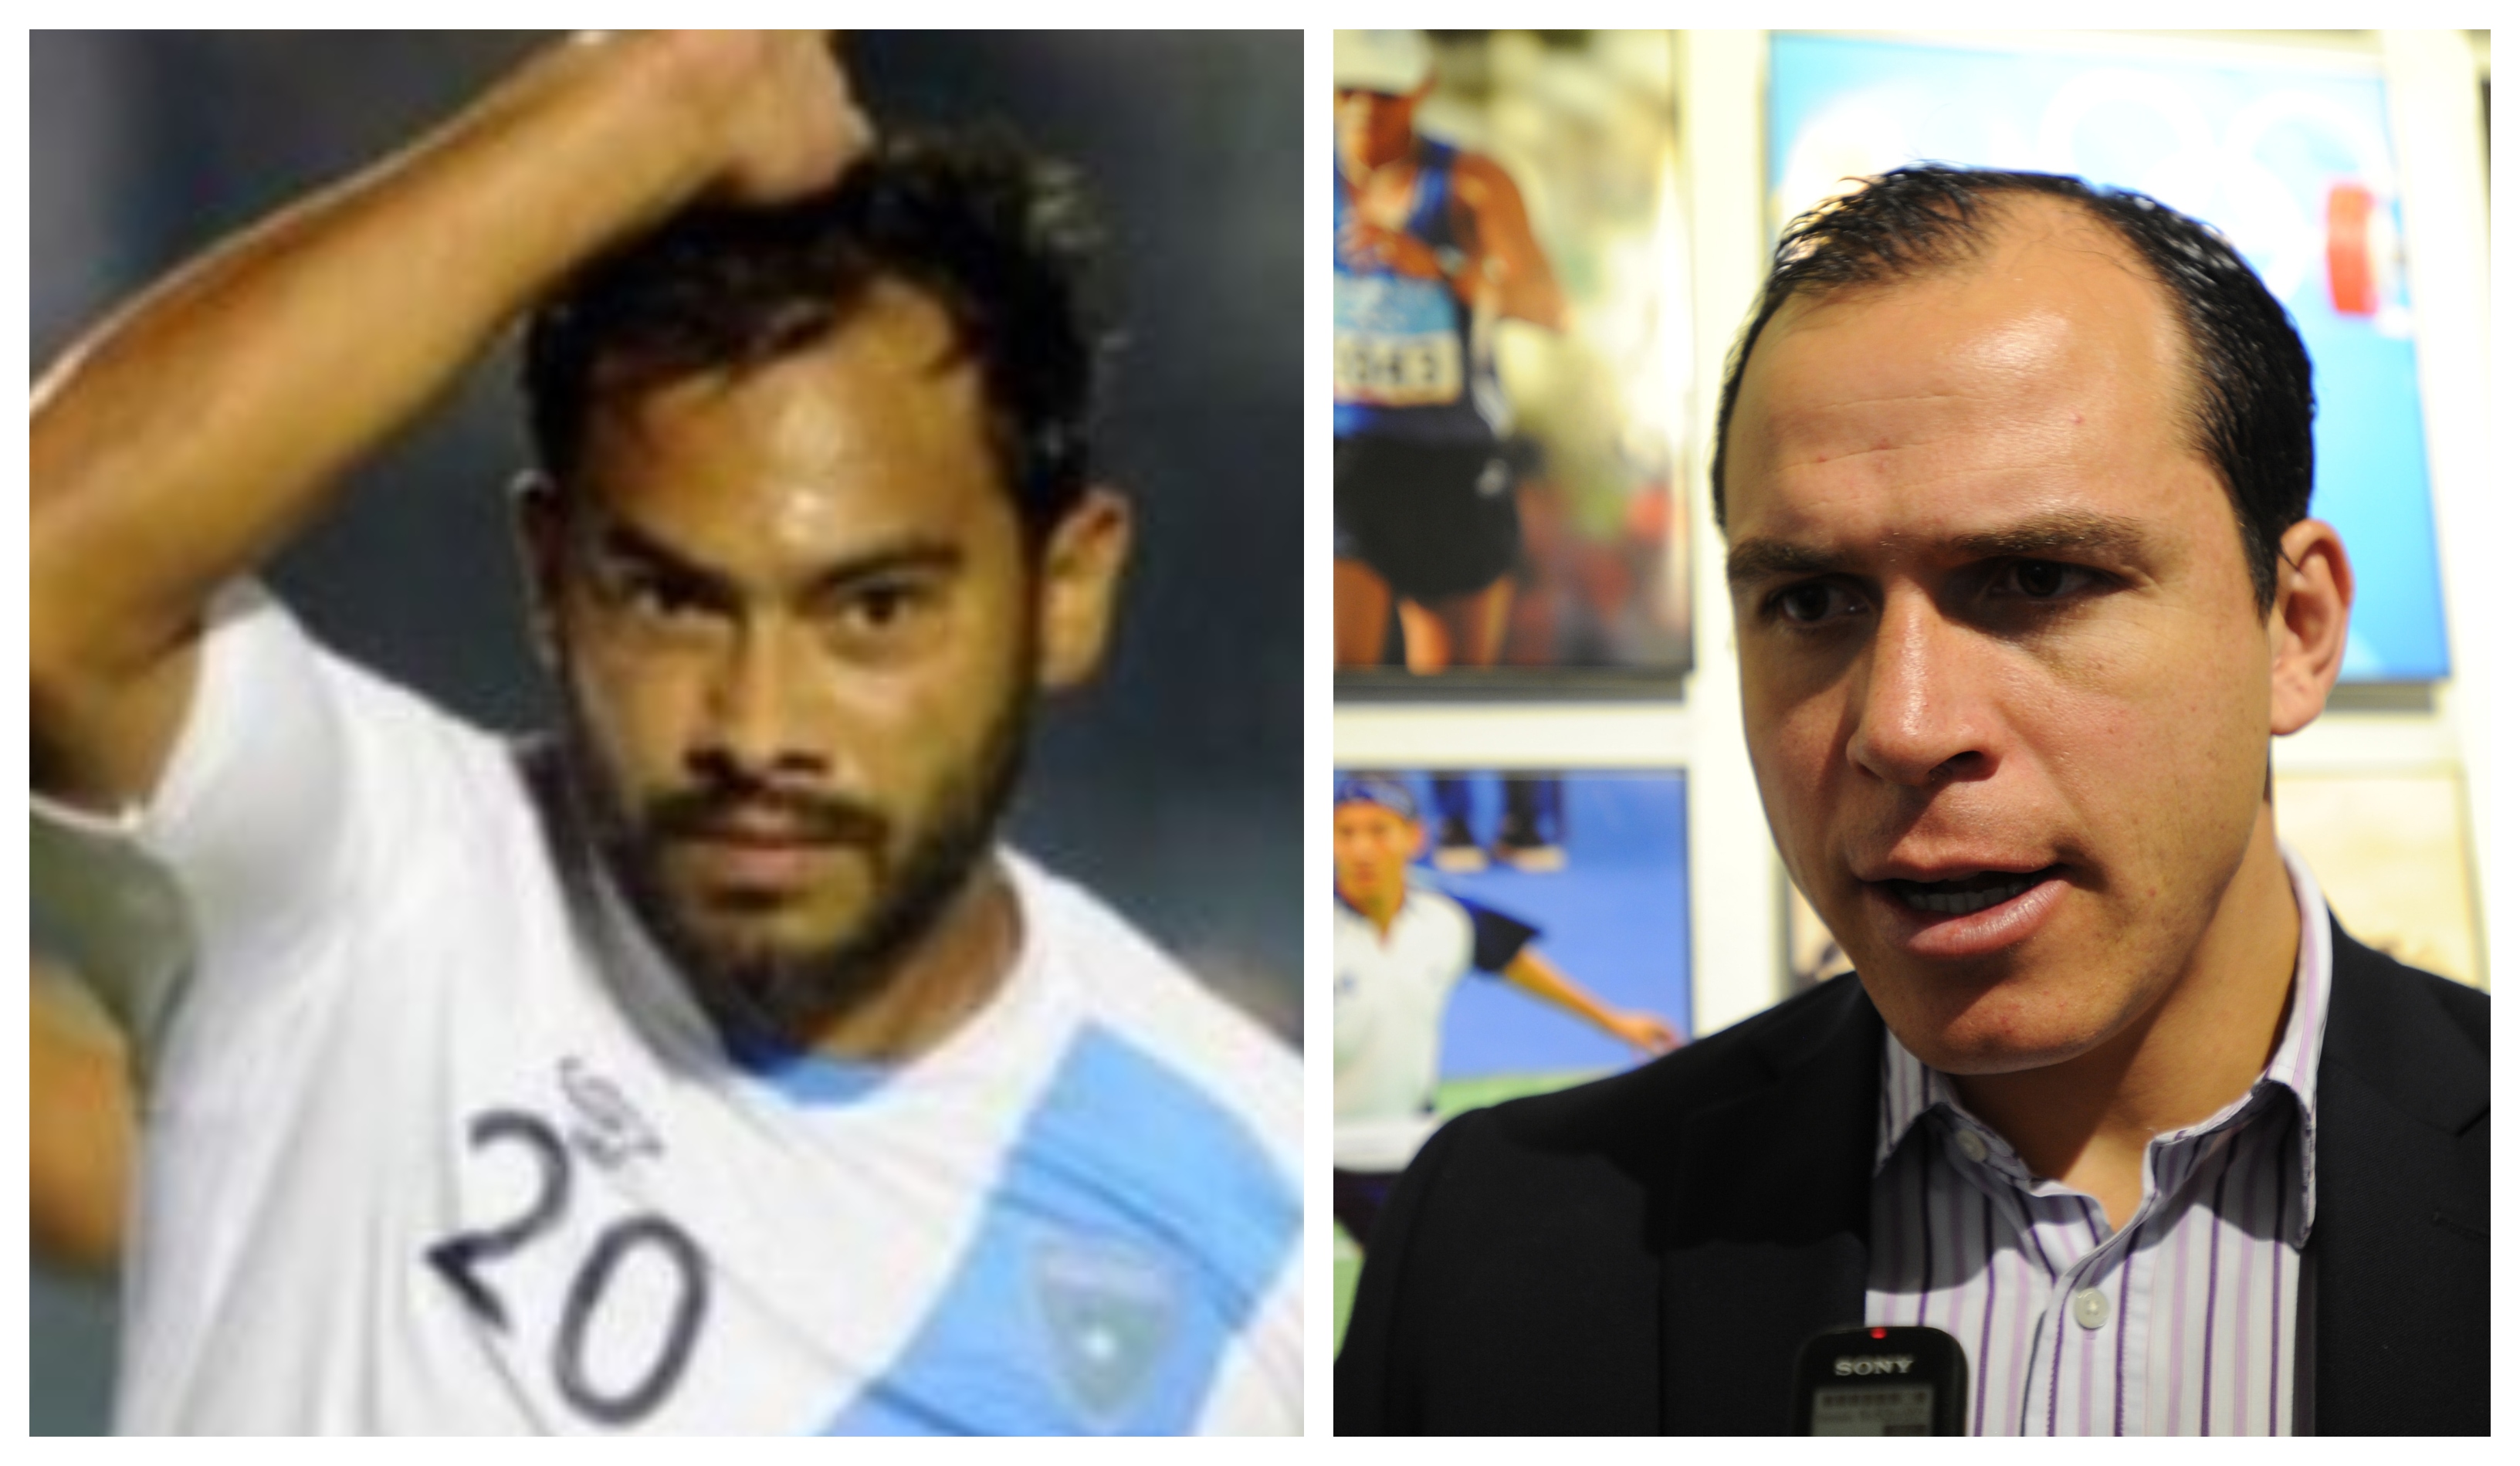 Carlos Ruiz y Dwight Pezzarossi, exjugadores y exseleccionados guatemaltecos. (Foto Prensa Libre: Hemeroteca PL)